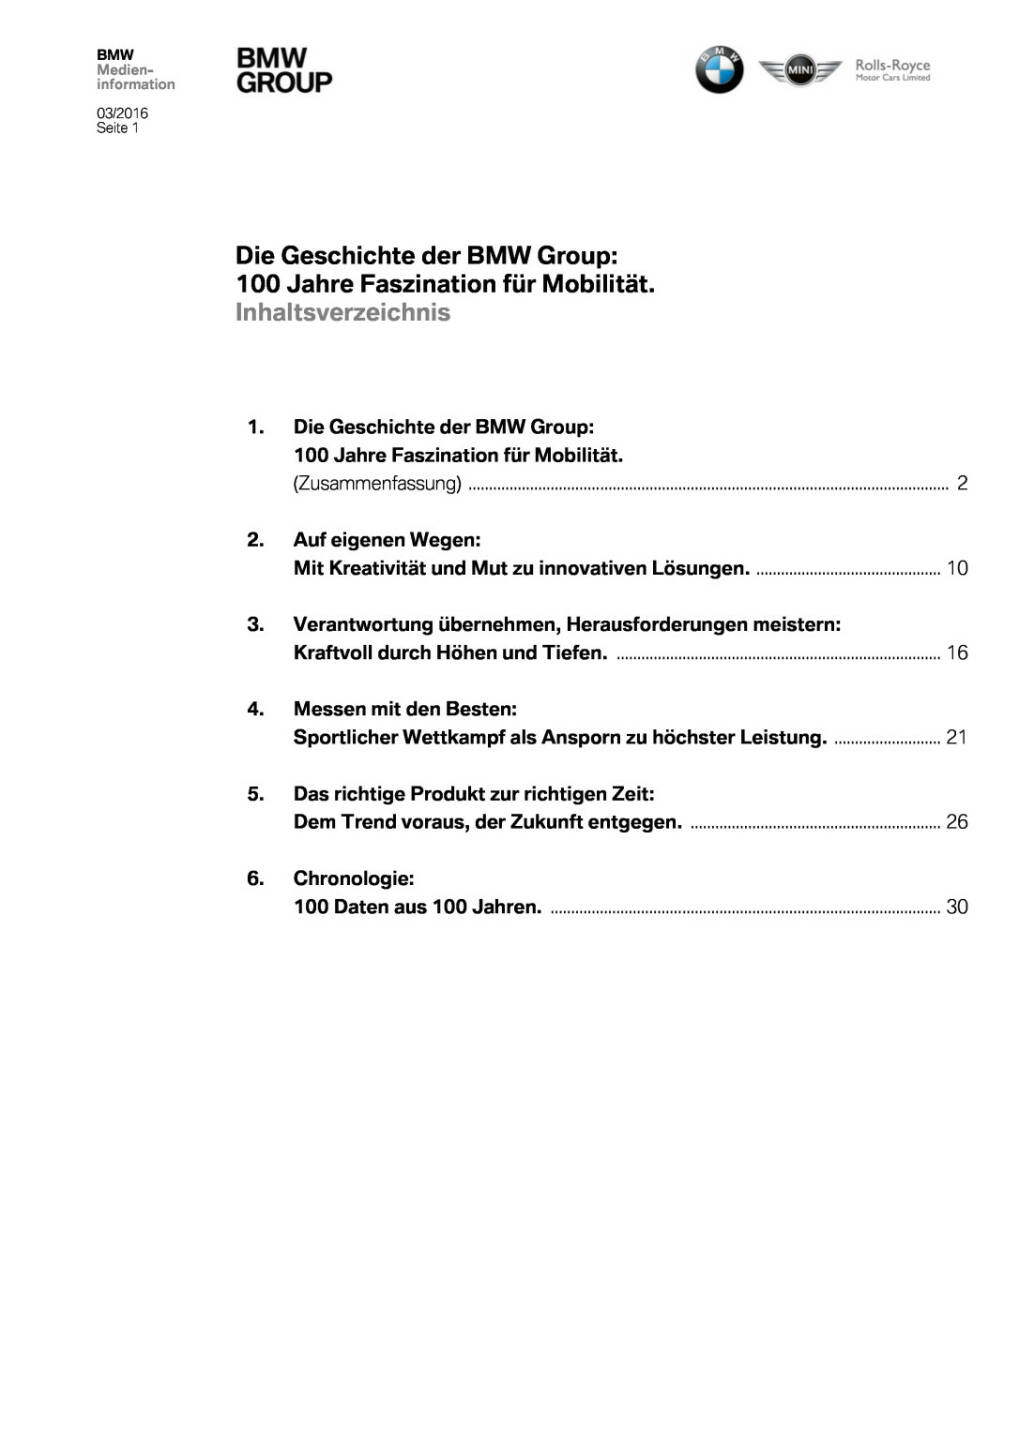 Die Geschichte der BMW Group - 100 Jahre Faszination für Mobilität , Seite 1/41, komplettes Dokument unter http://boerse-social.com/static/uploads/file_729_die_geschichte_der_bmw_group_-_100_jahre_faszination_fur_mobilitat.pdf